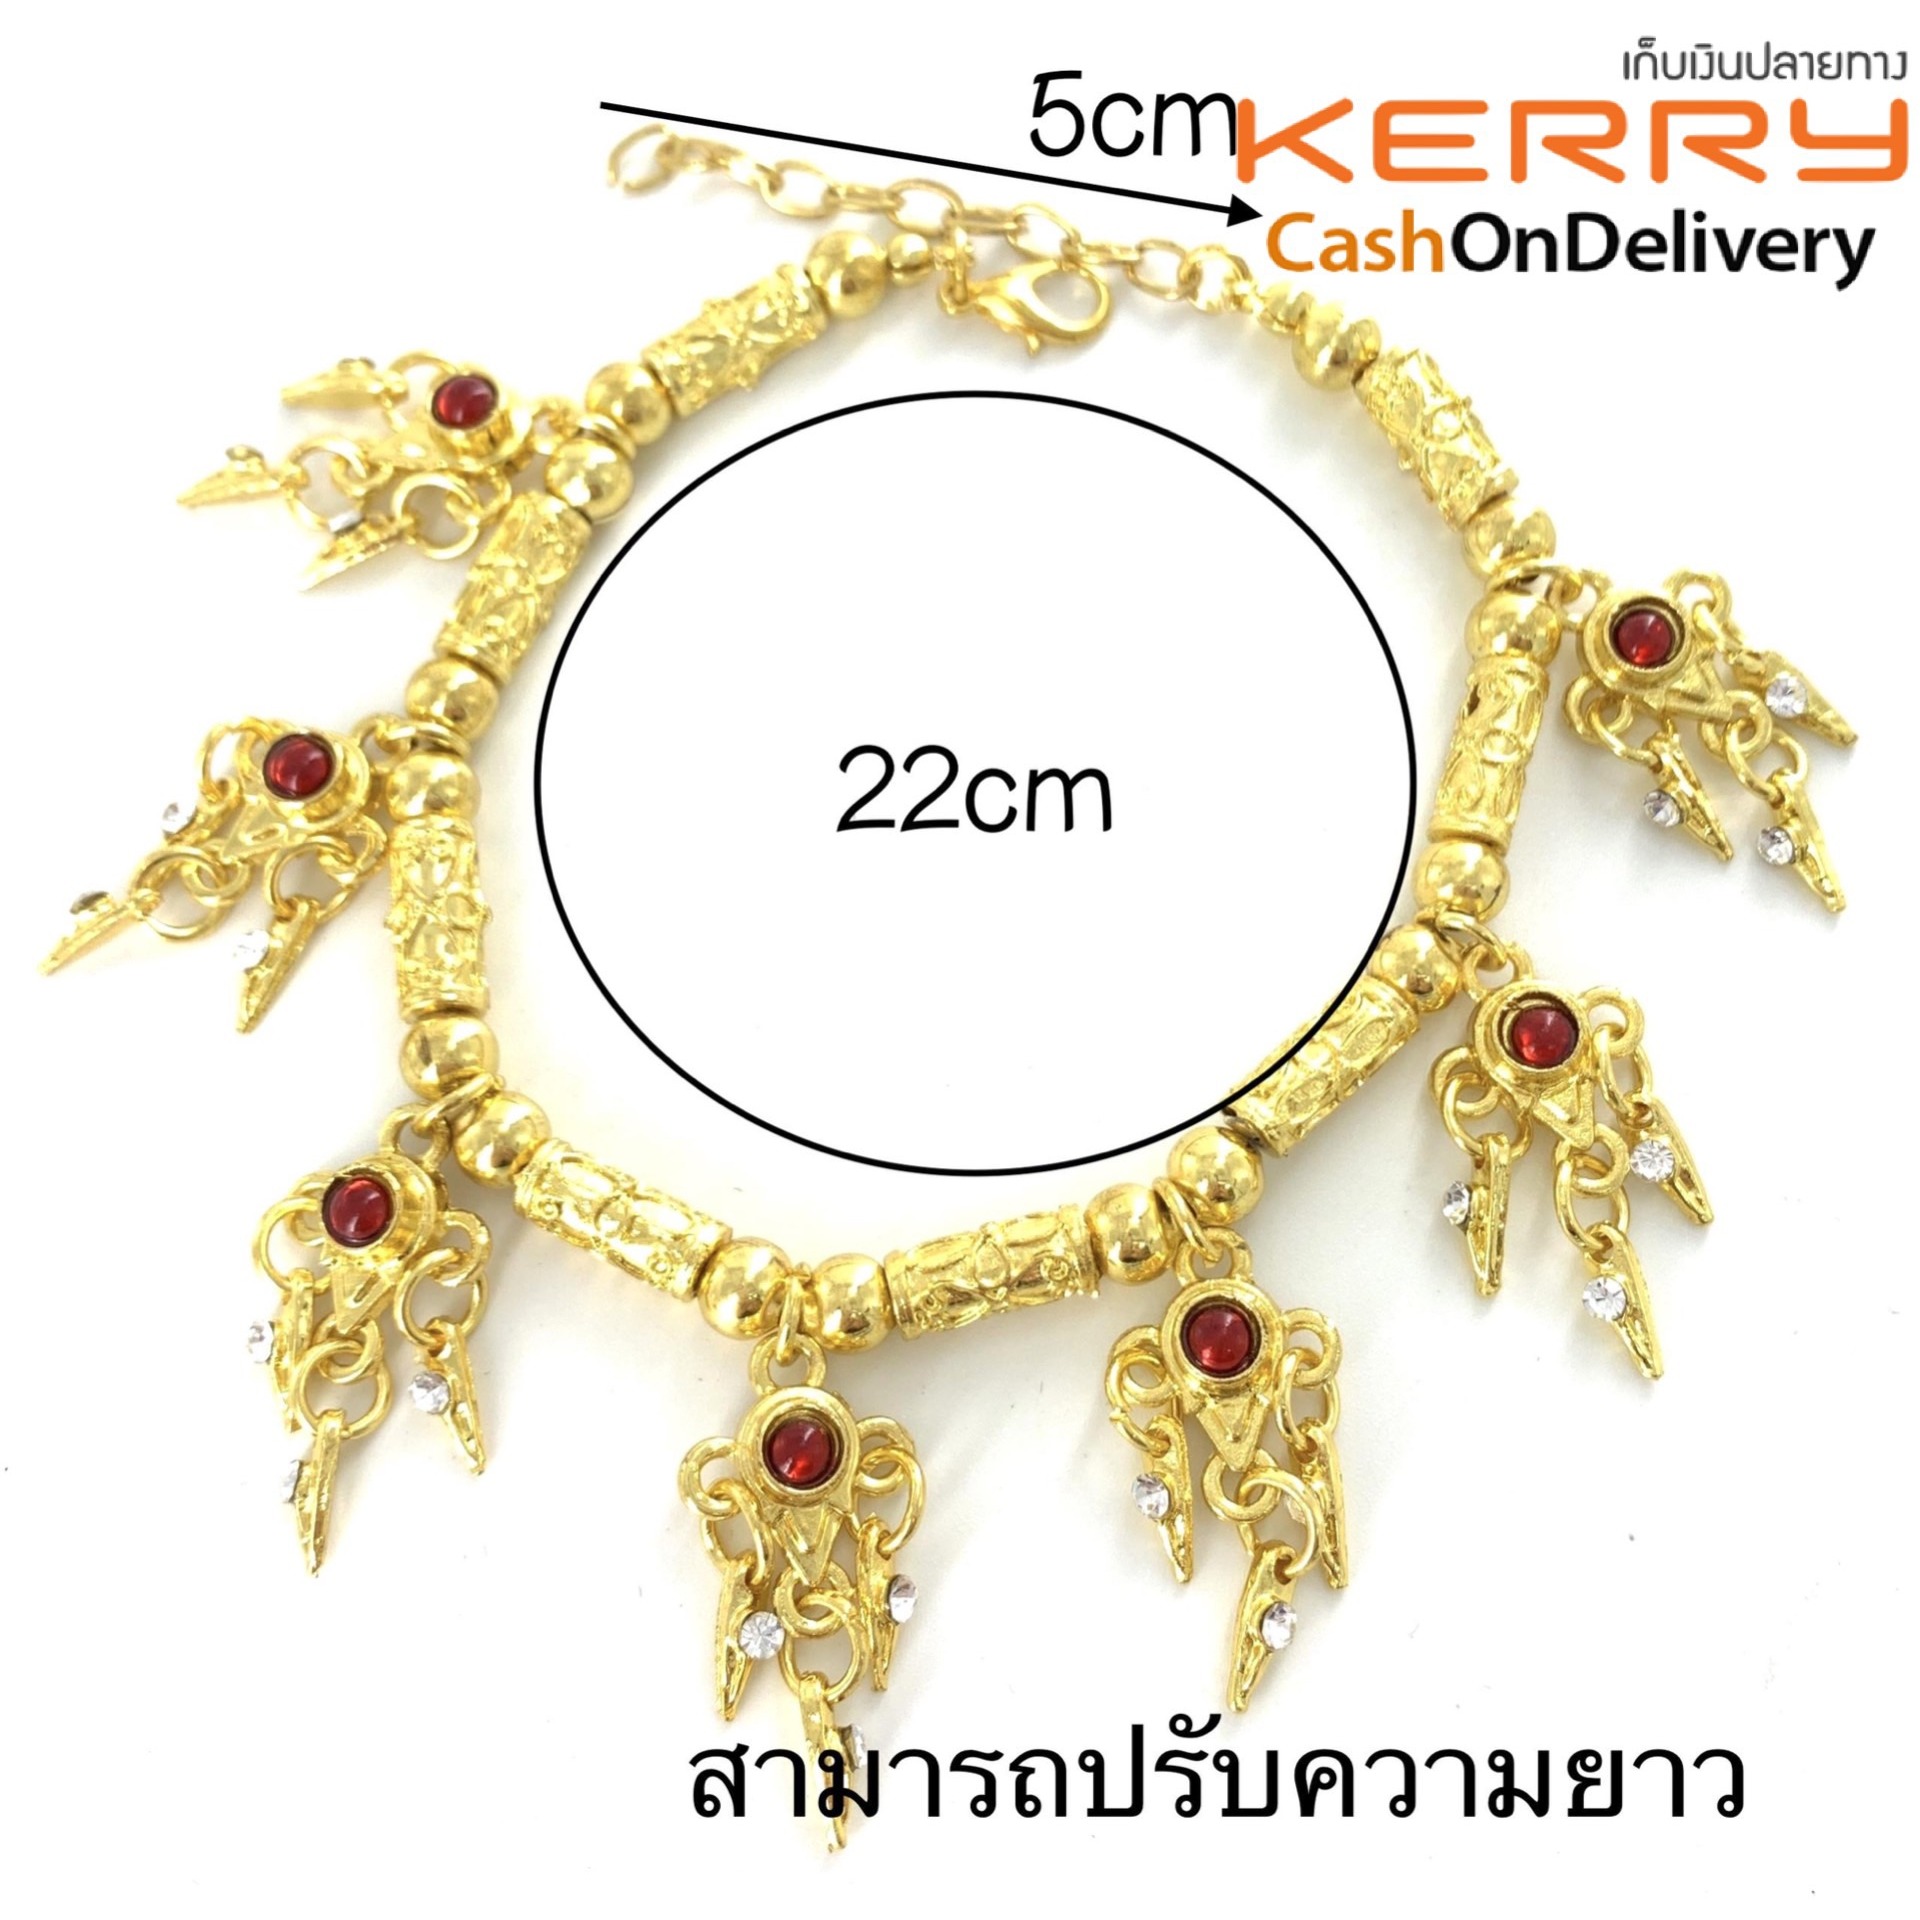 Vintage Jewelry ชุดไทย เครื่องประดับ เพชร ทอง สร้อยข้อมือ ประเพณี ผู้หญิง